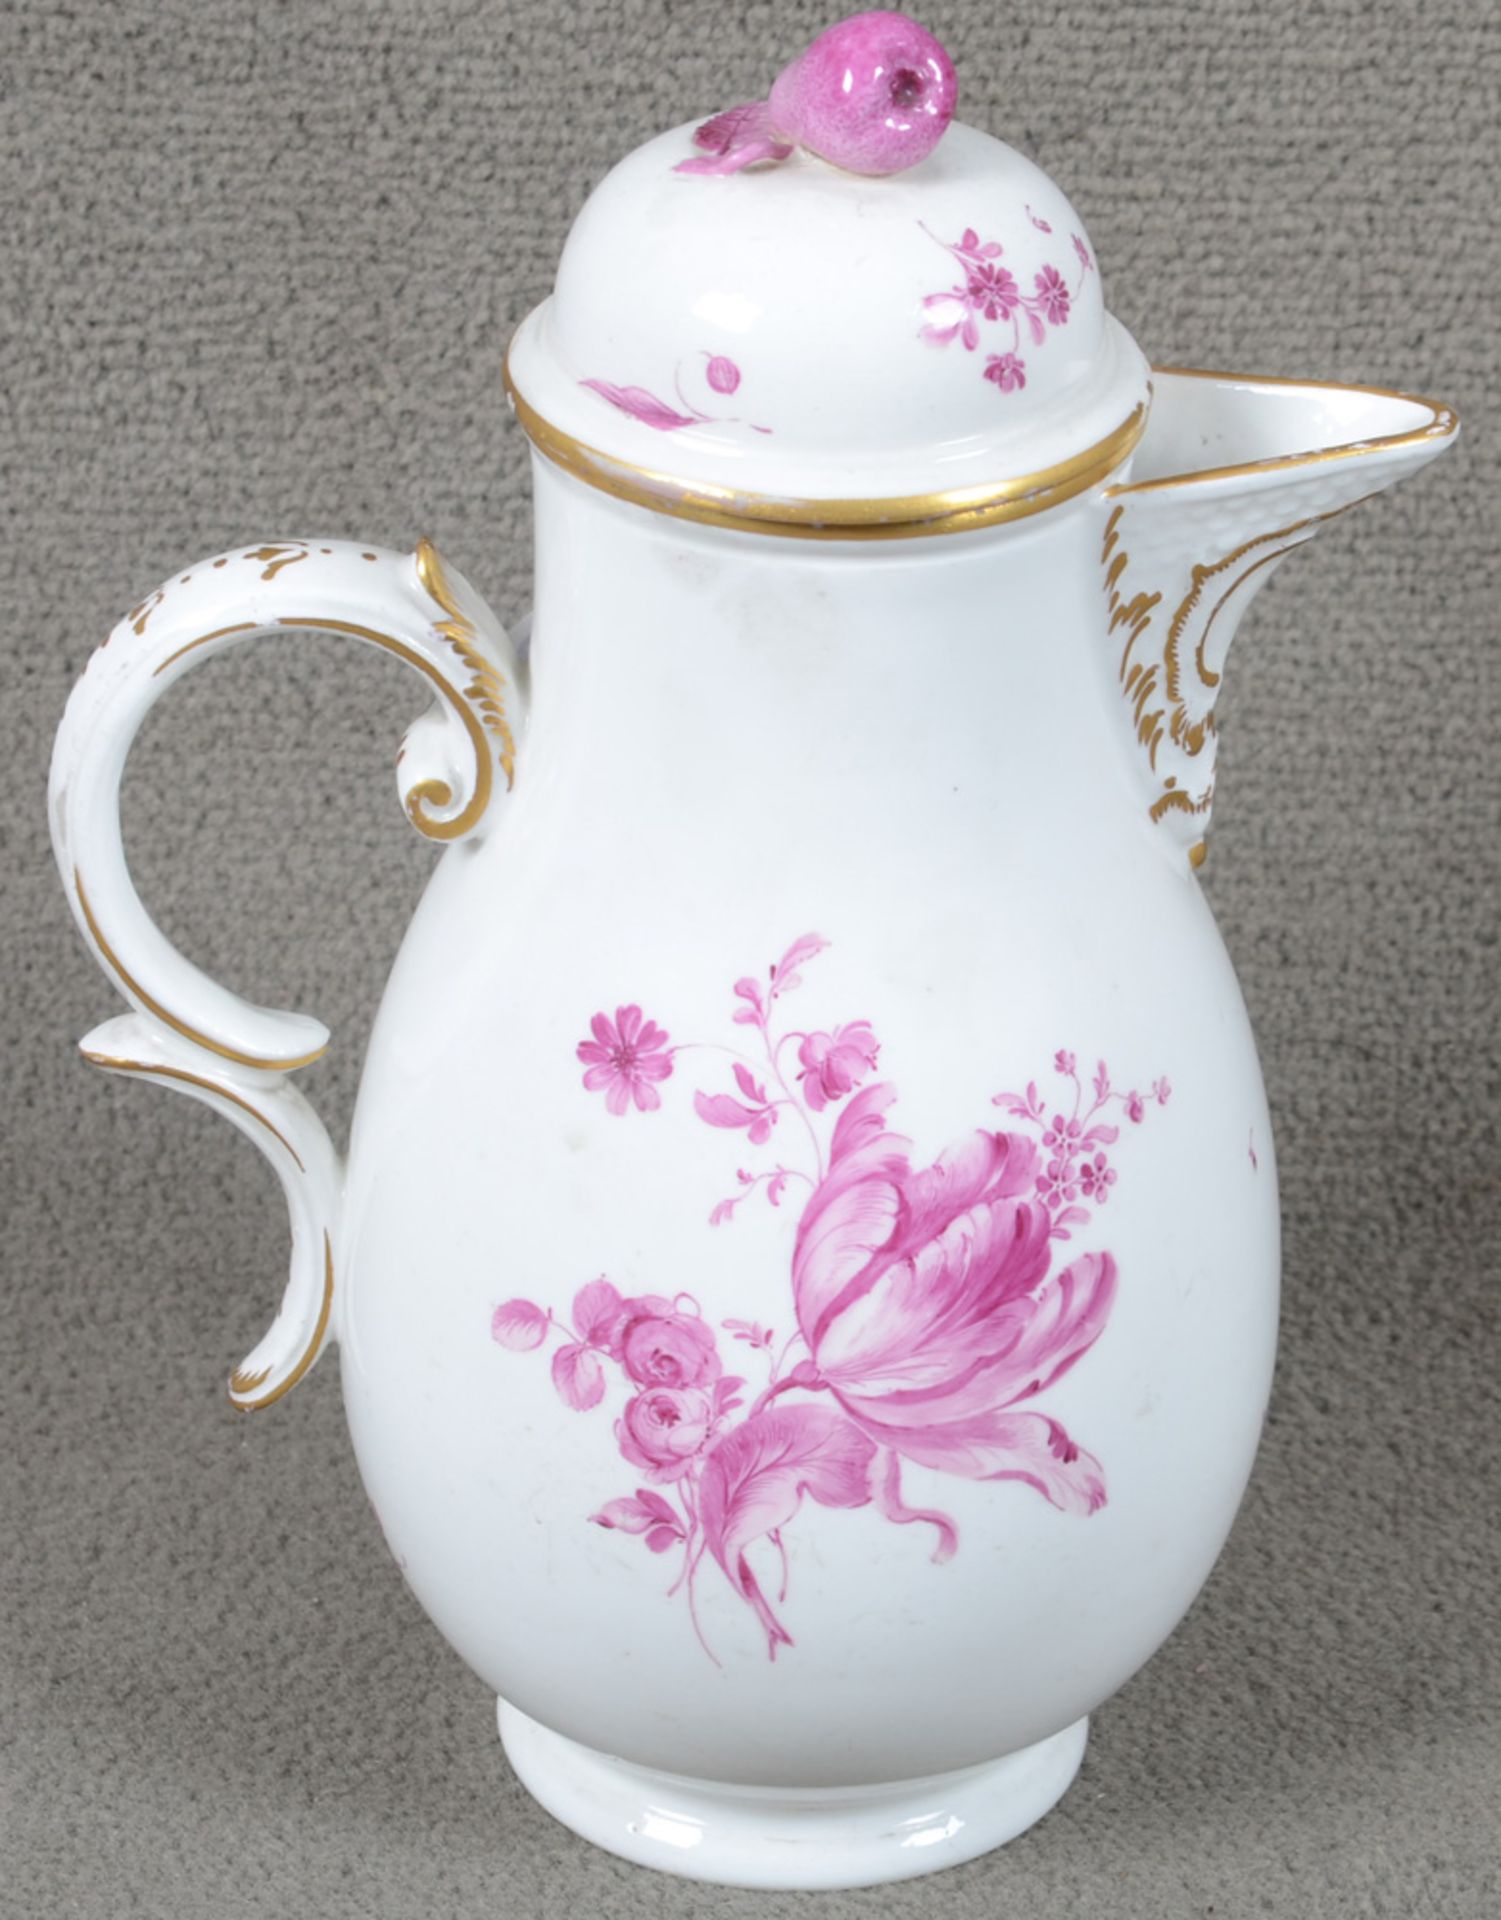 Kanne. Höchst 1760. Porzellan, purpur floral bemalt, am Boden purpurne Radmarke, H=18,5 cm. - Image 2 of 3